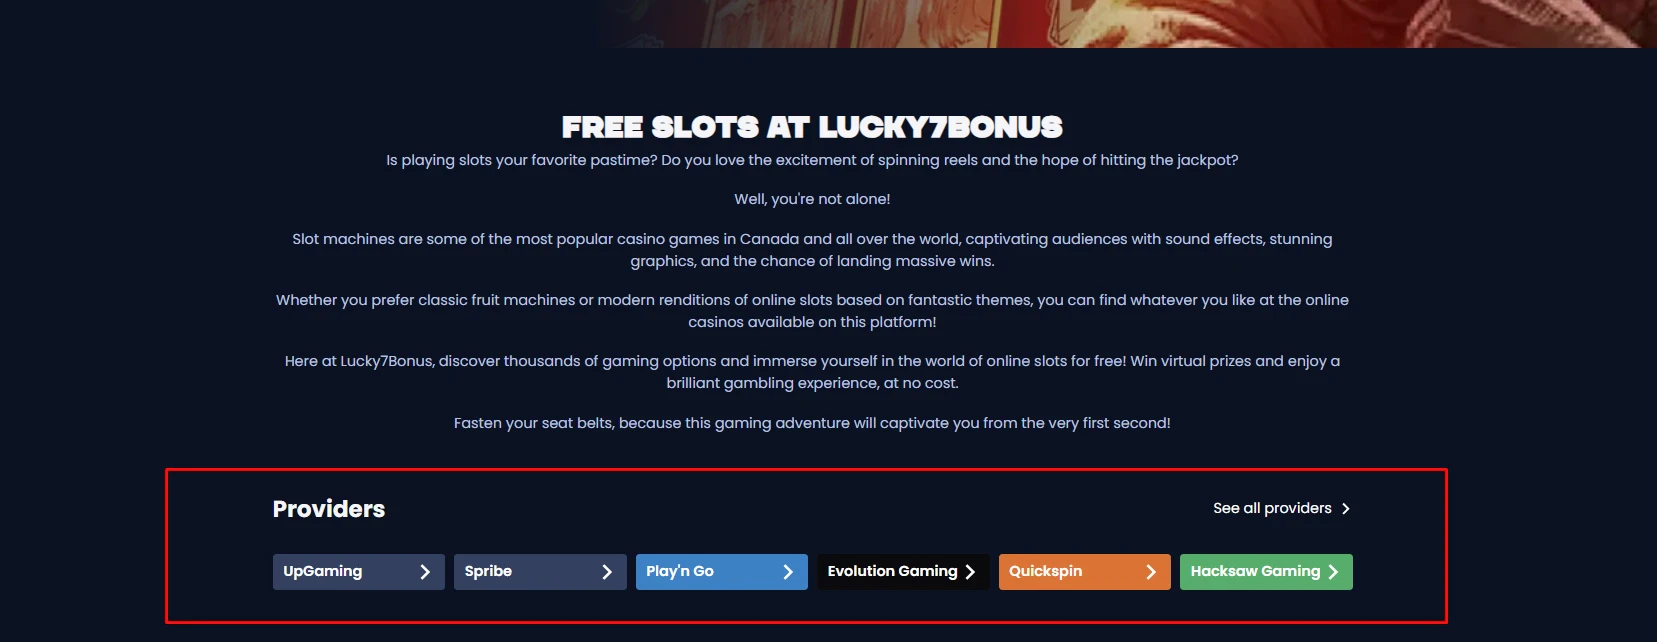 Free Slots at Lucky7Bonus